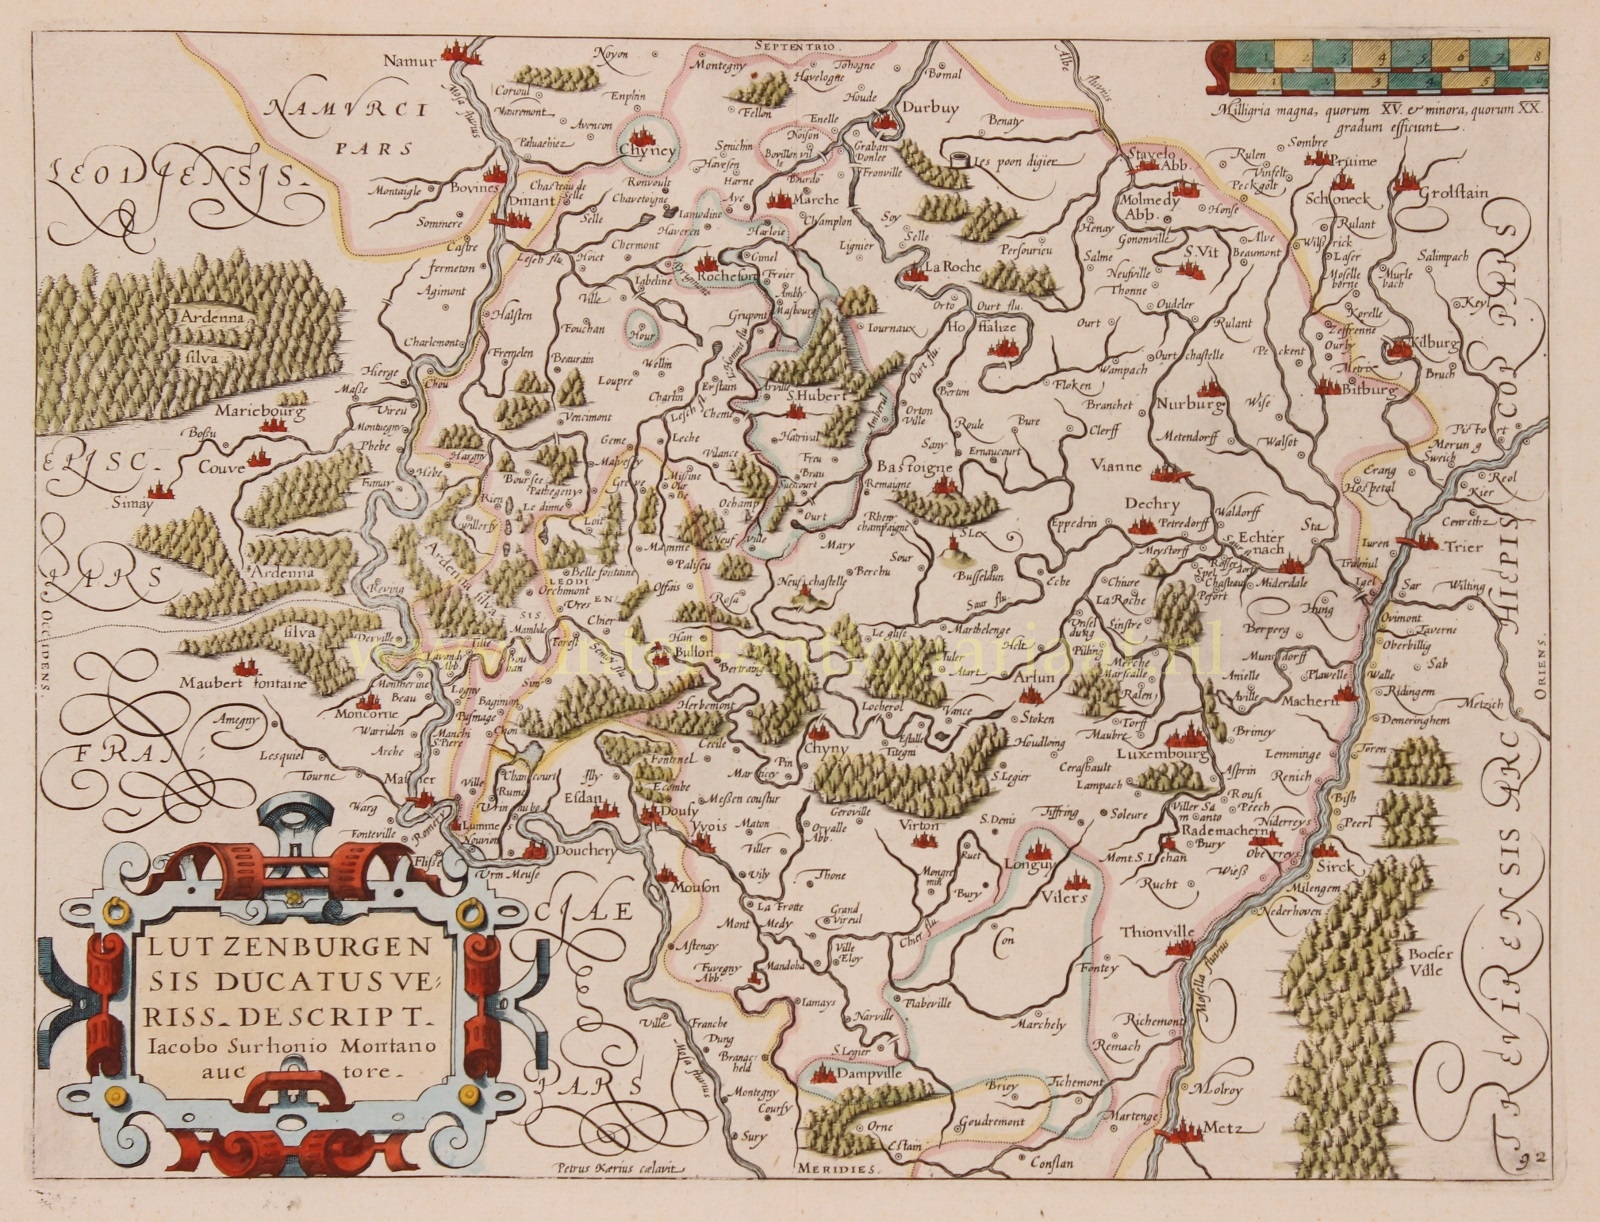 Guicciardini-- Lodovico - Luxembourg - Petrus Kaerius / Ludovico Guicciardini, 1609